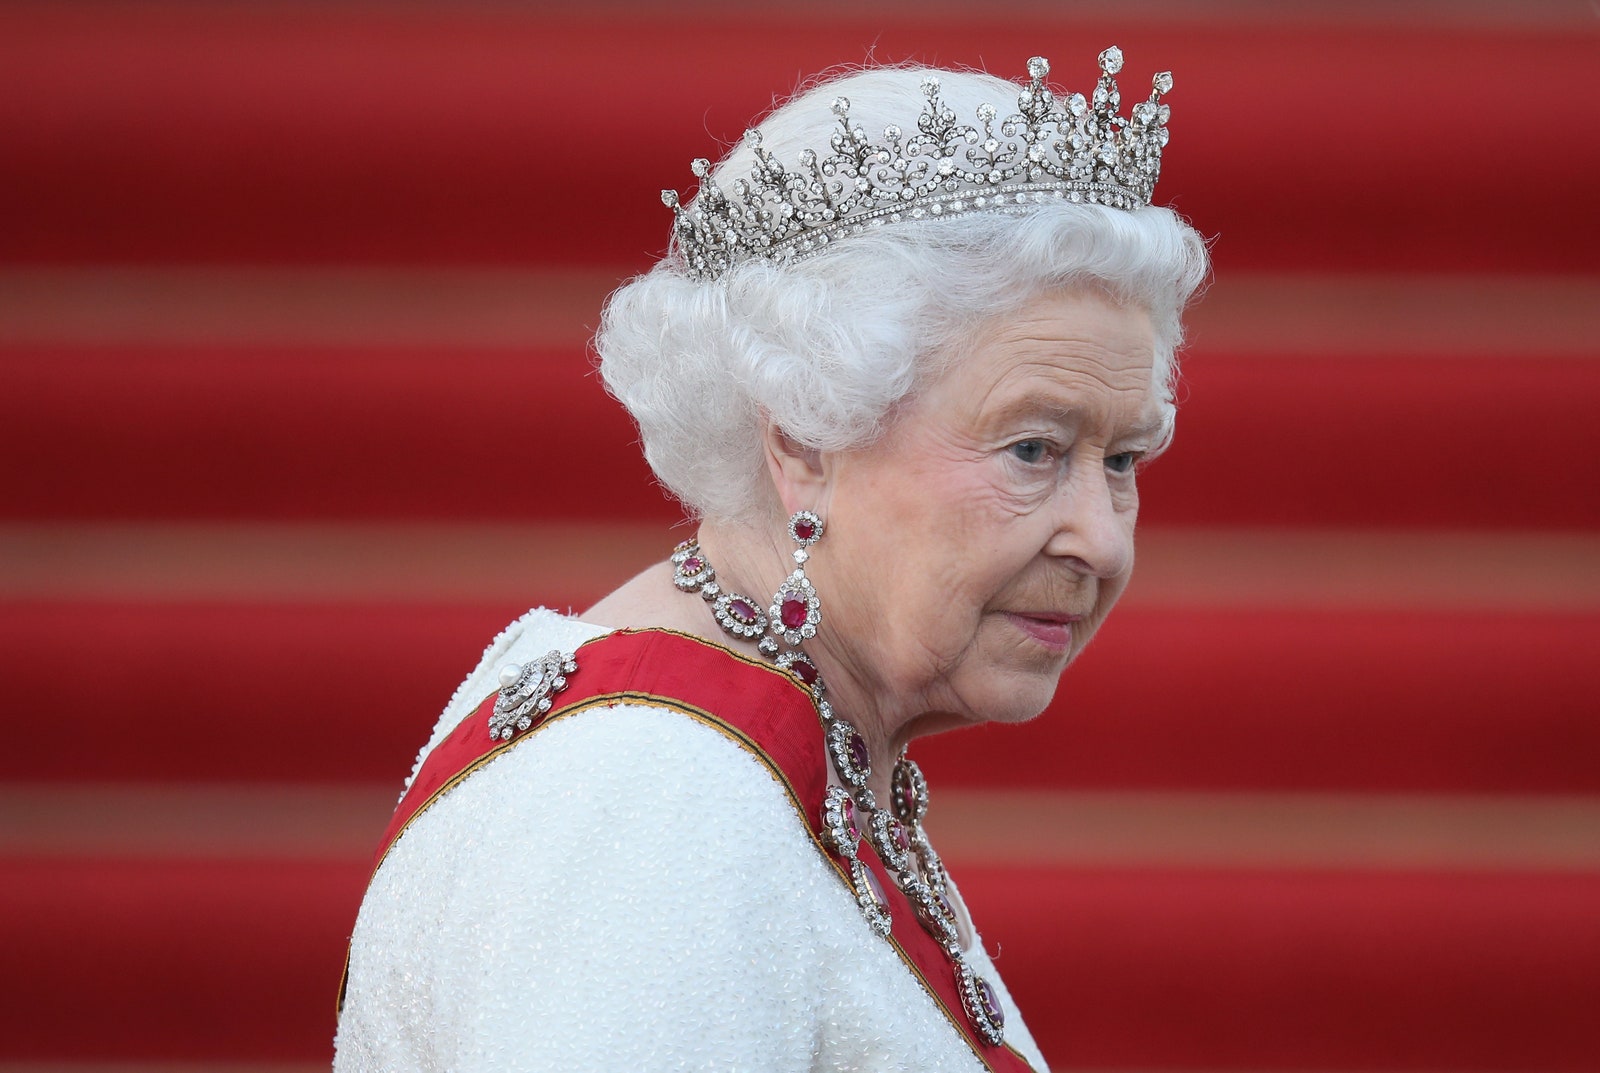 ¡Falleció la Reina Isabel II! Se activan los operativos “Unicornio” y “Puente de Londres